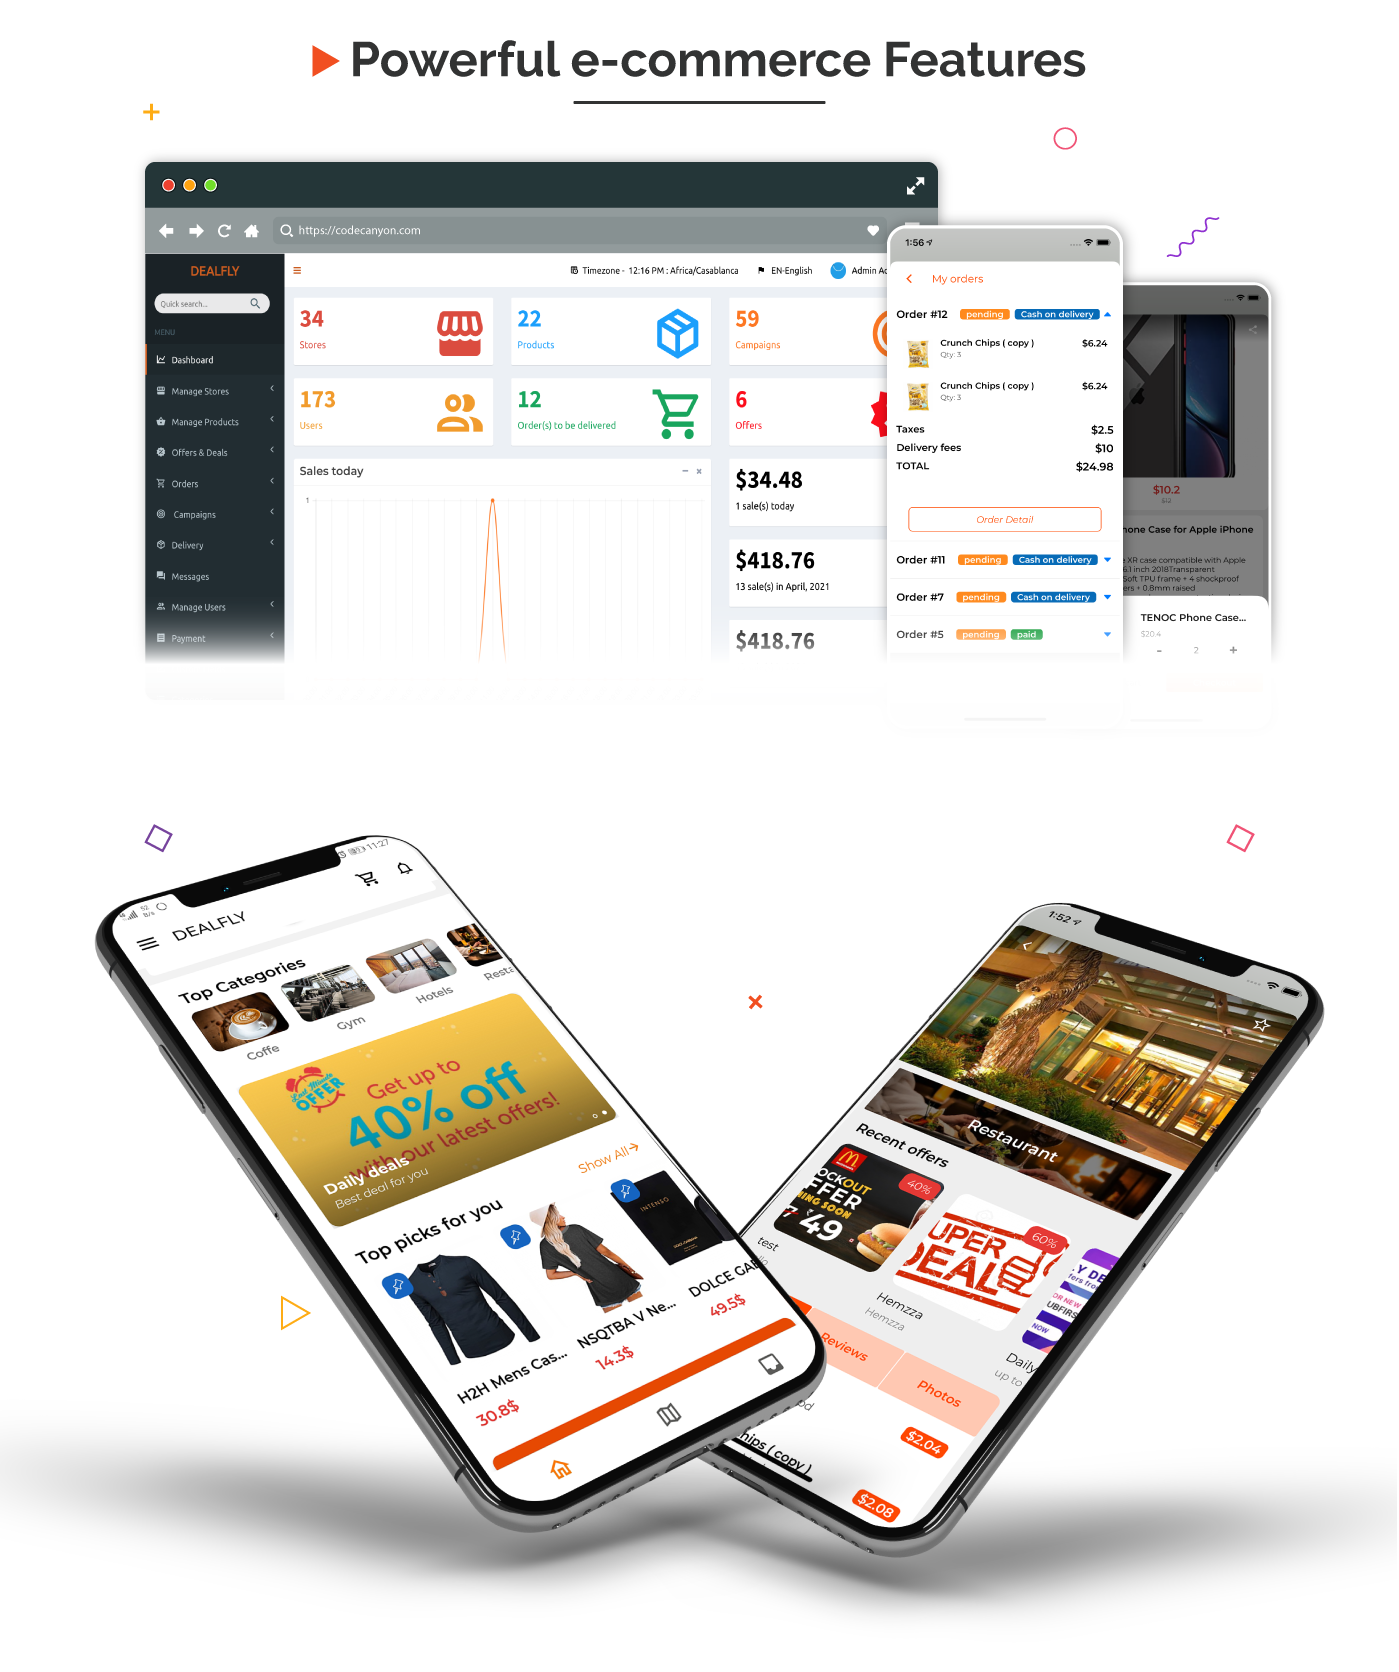 Dealfly - E-ticaret ve çok satıcılı pazar yeri,Teklifler, Abonelik sistemi - iOS ve Android - v2.6 - 4